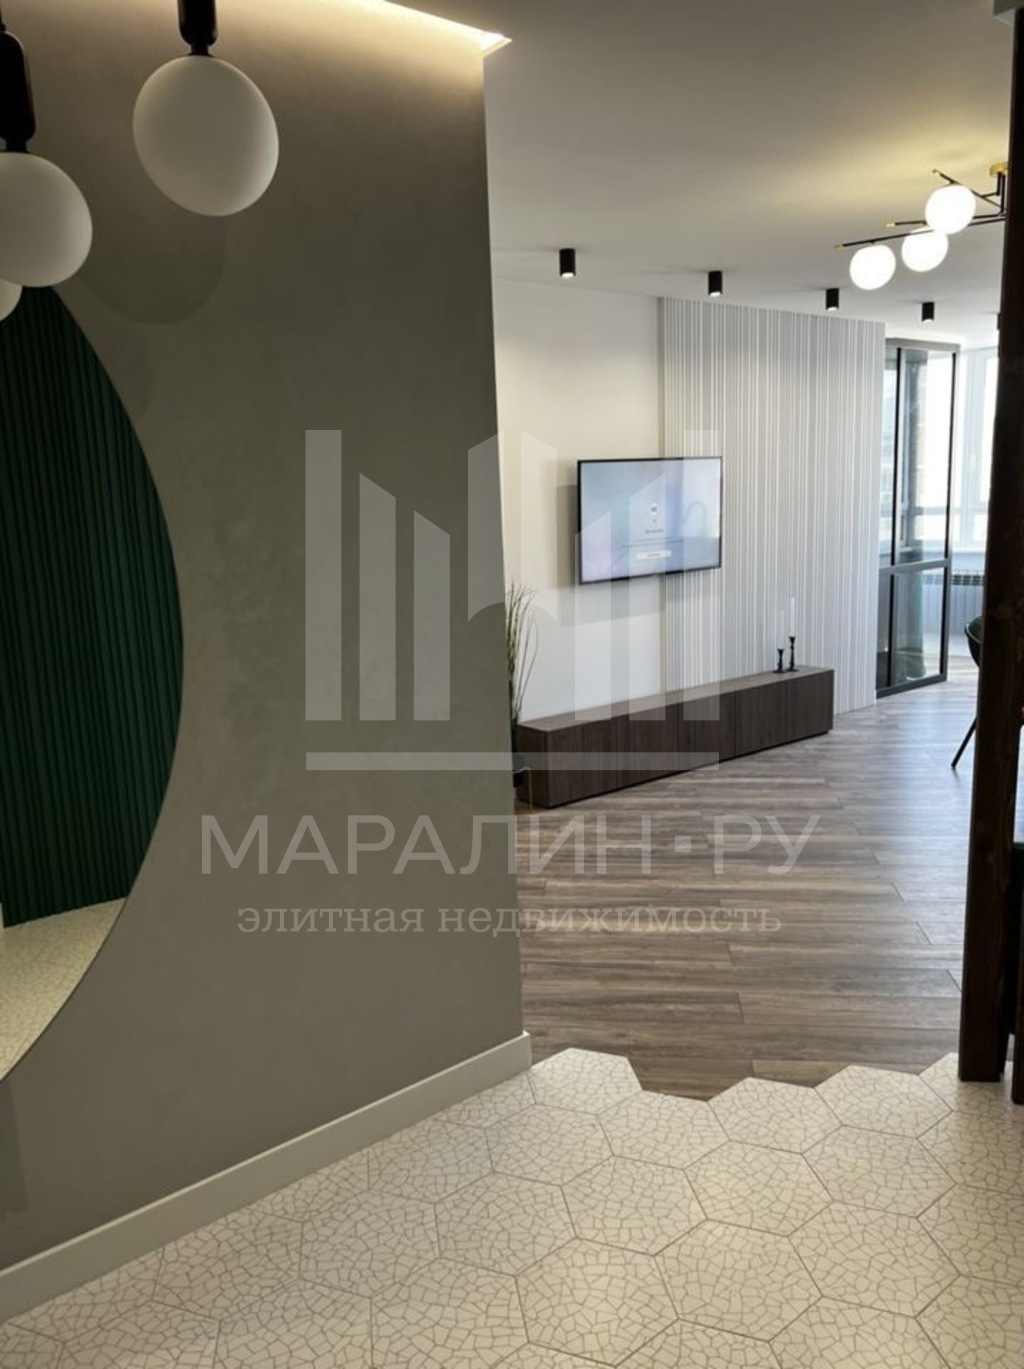 Species 3-com. apartment with designer renovation